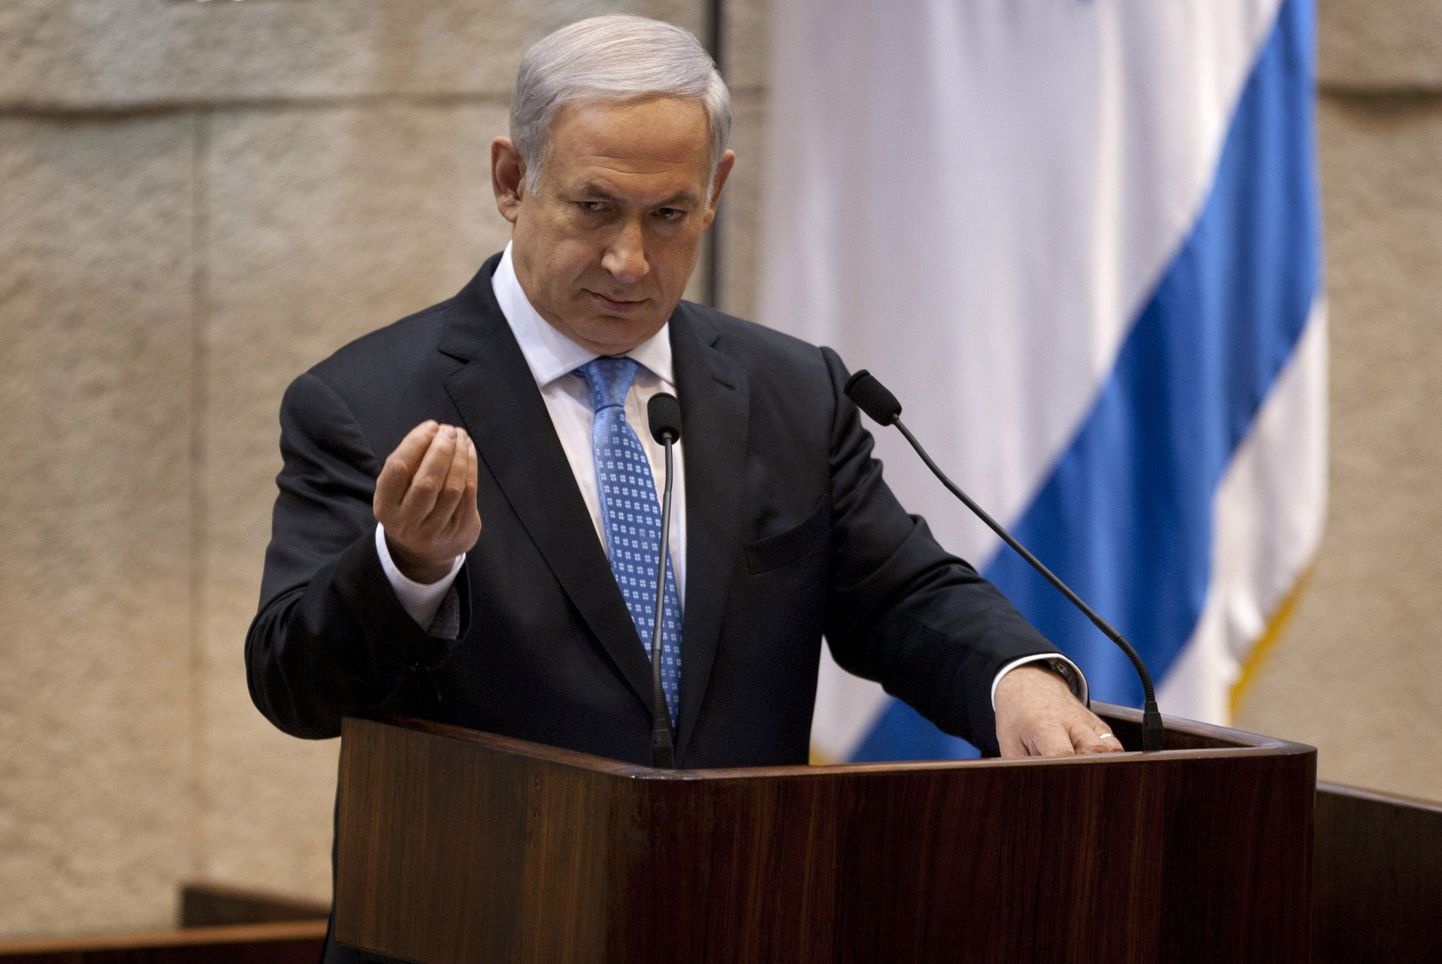 Премьер-министр Израиля Беньямин Нетаньяху